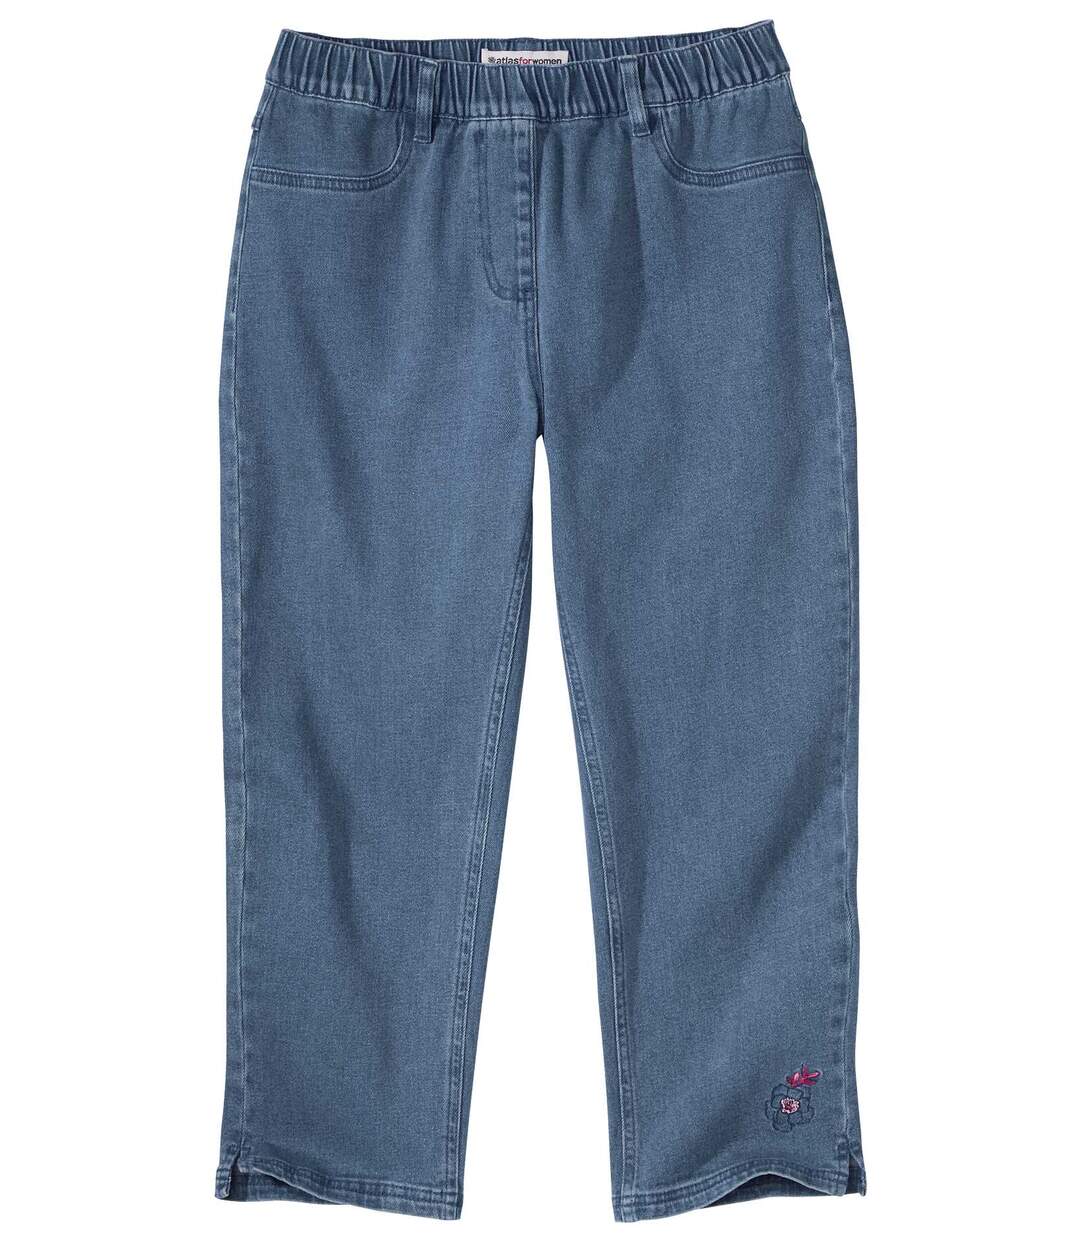 Tregginsy 7/8 z jeansu ze stretchem i haftami  Atlas For Men